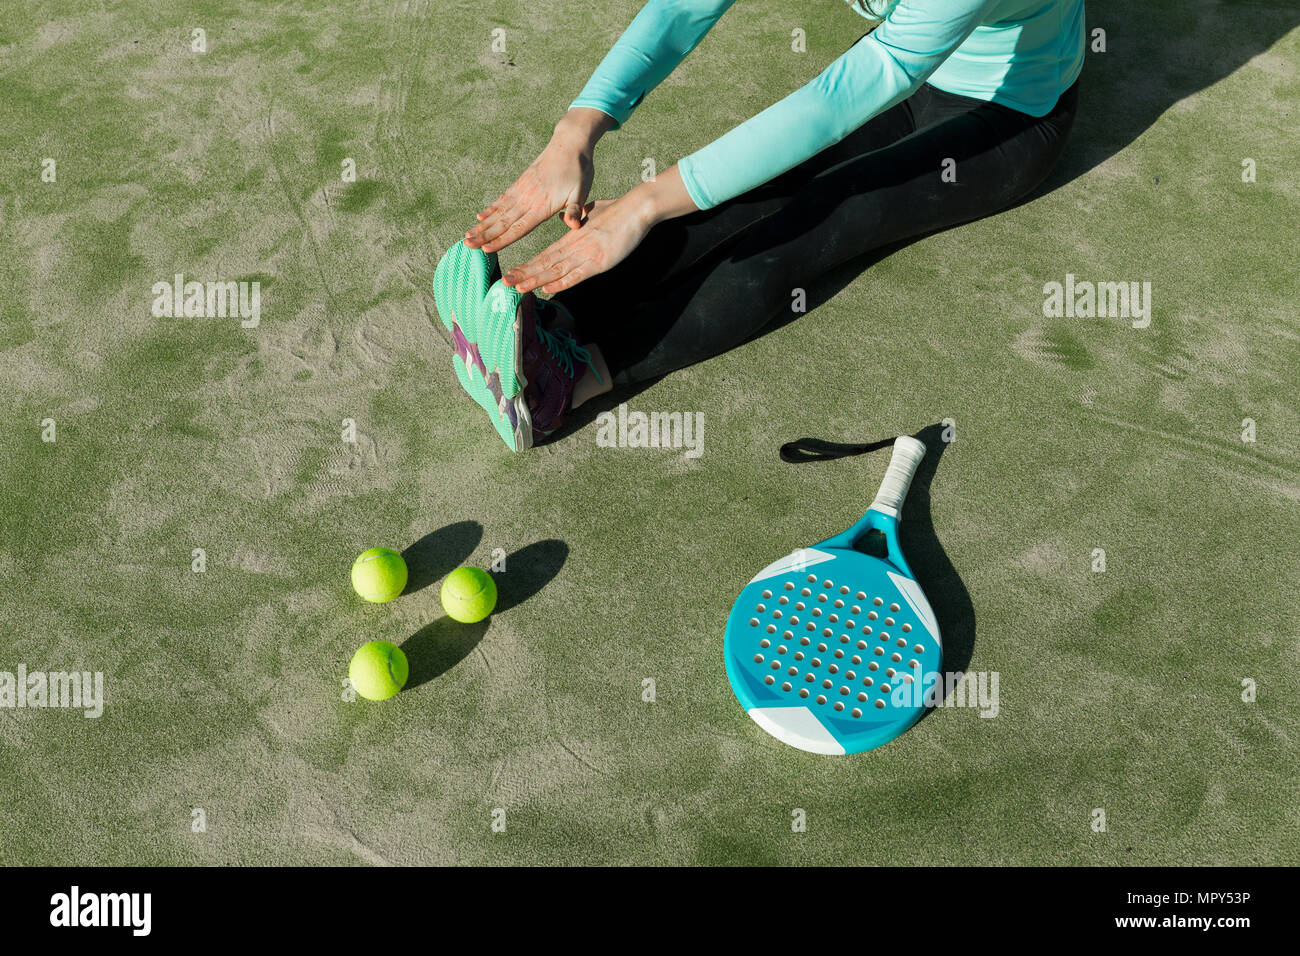 Sezione bassa di donna stretching con la racchetta da tennis e le sfere sulla corte durante la giornata di sole Foto Stock